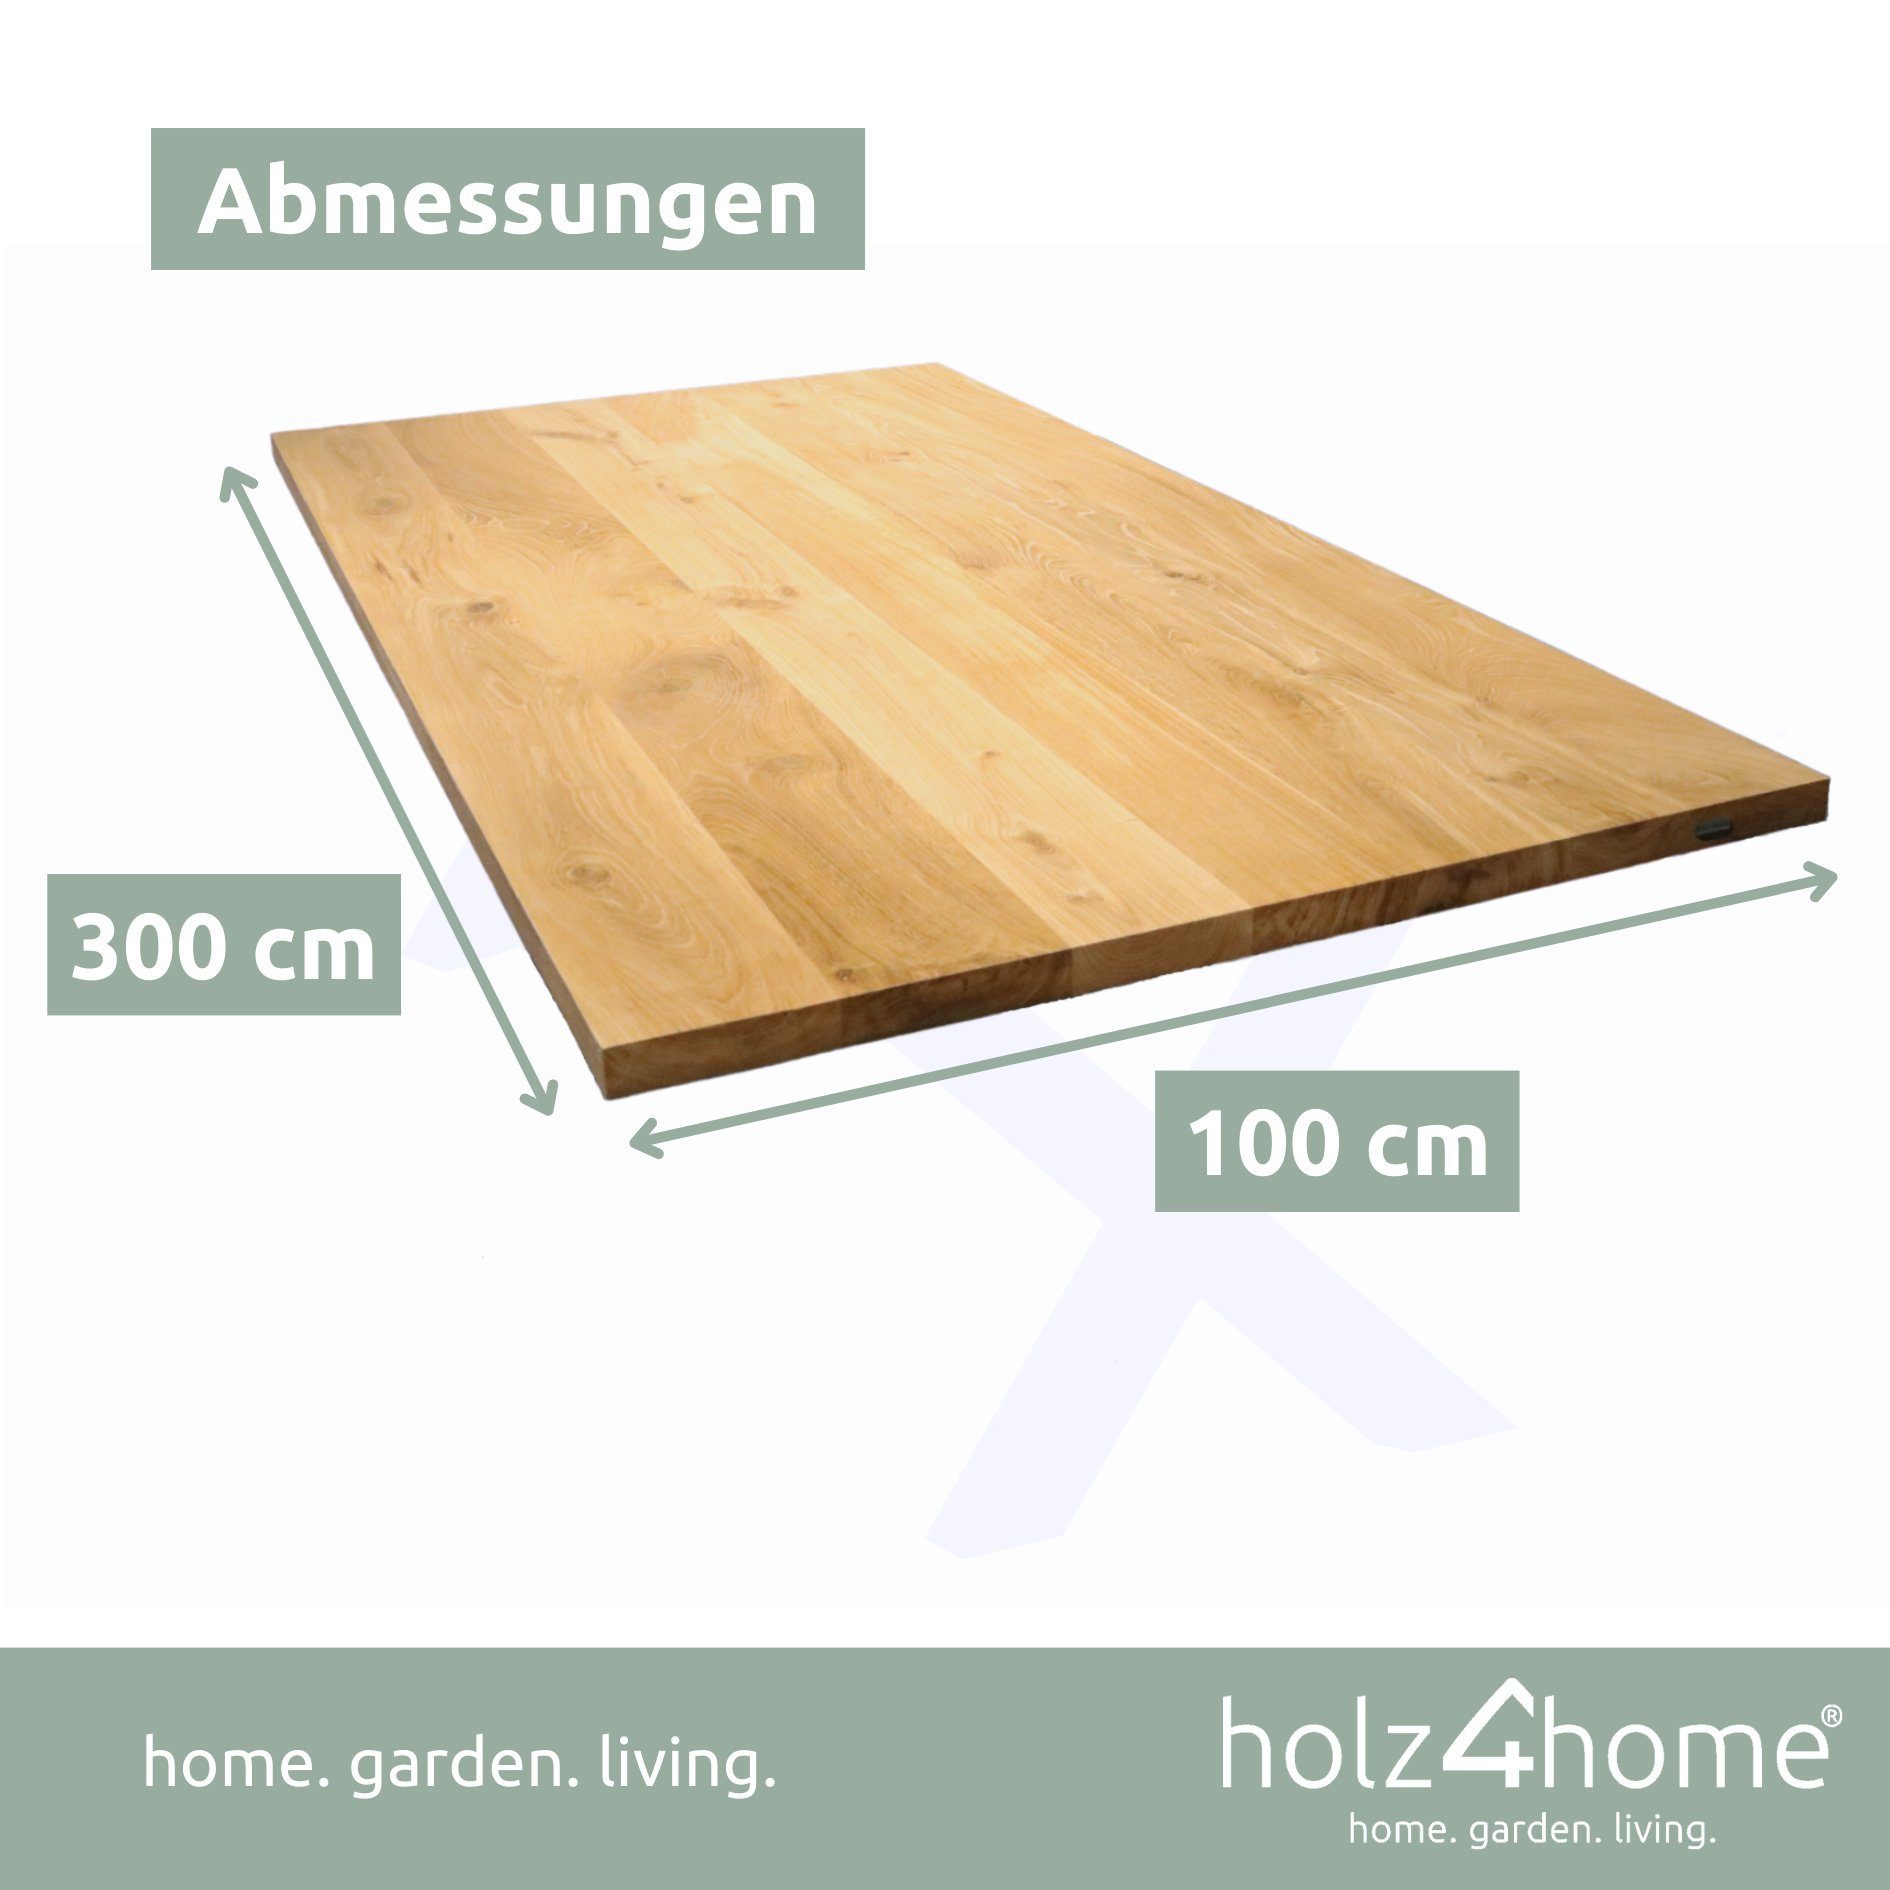 Tischplatte holz4home 160x80x4cm, Eiche, Esstischplatte Esstisch, Schreibtischplatte Echtholz